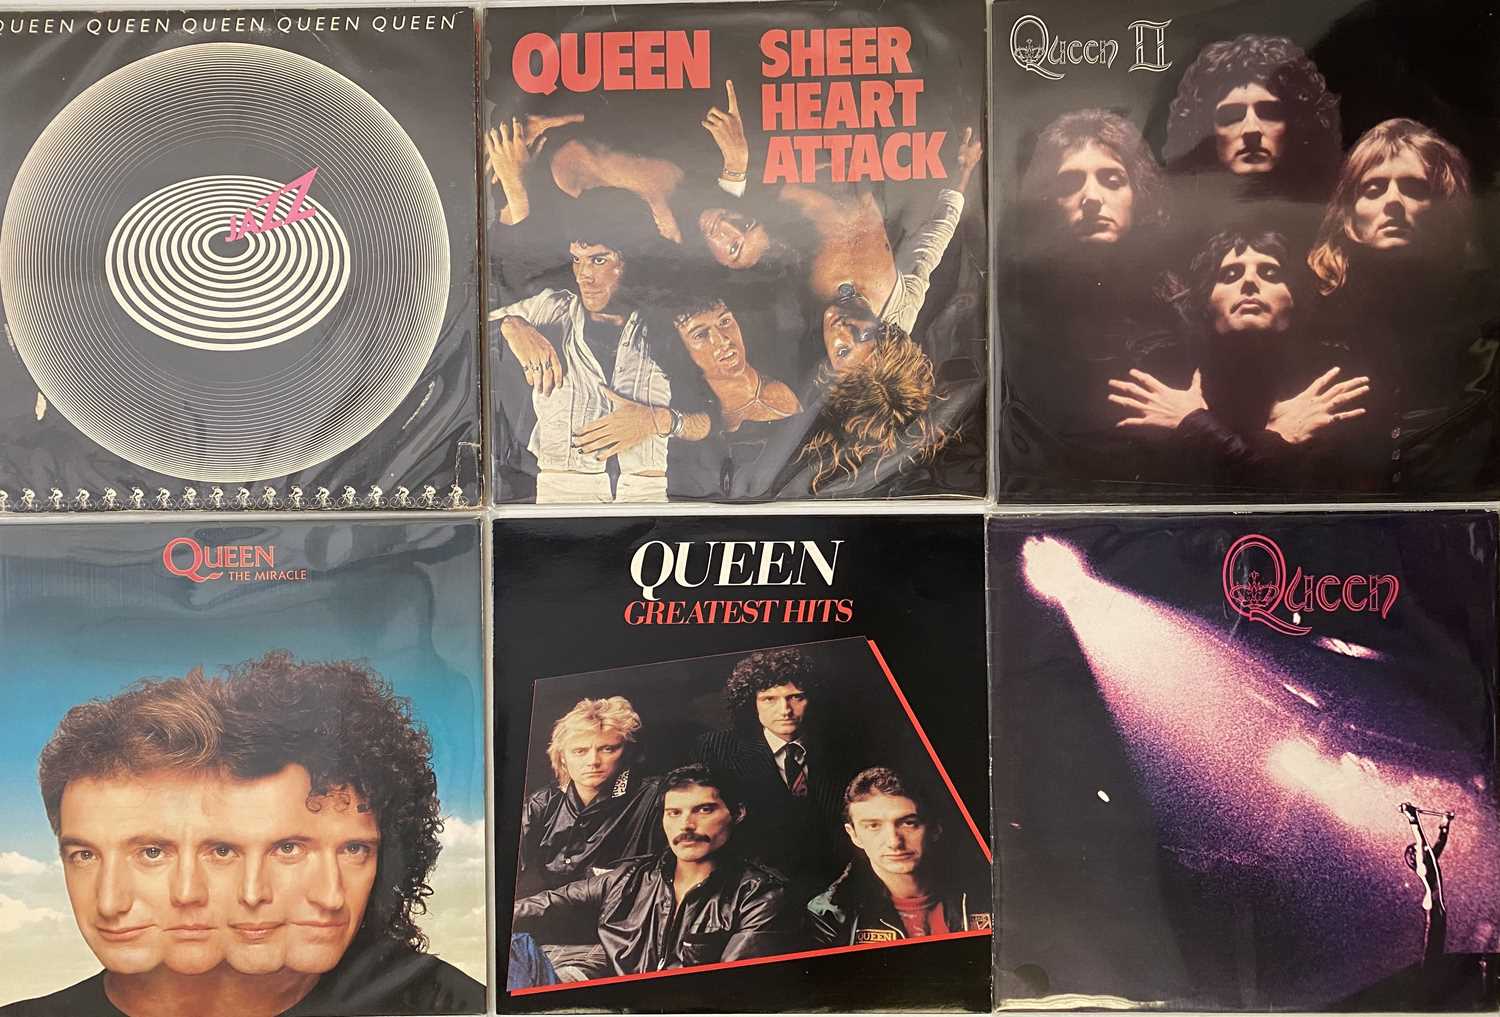 Queen Greatest Hits Collectors Poster - Queen